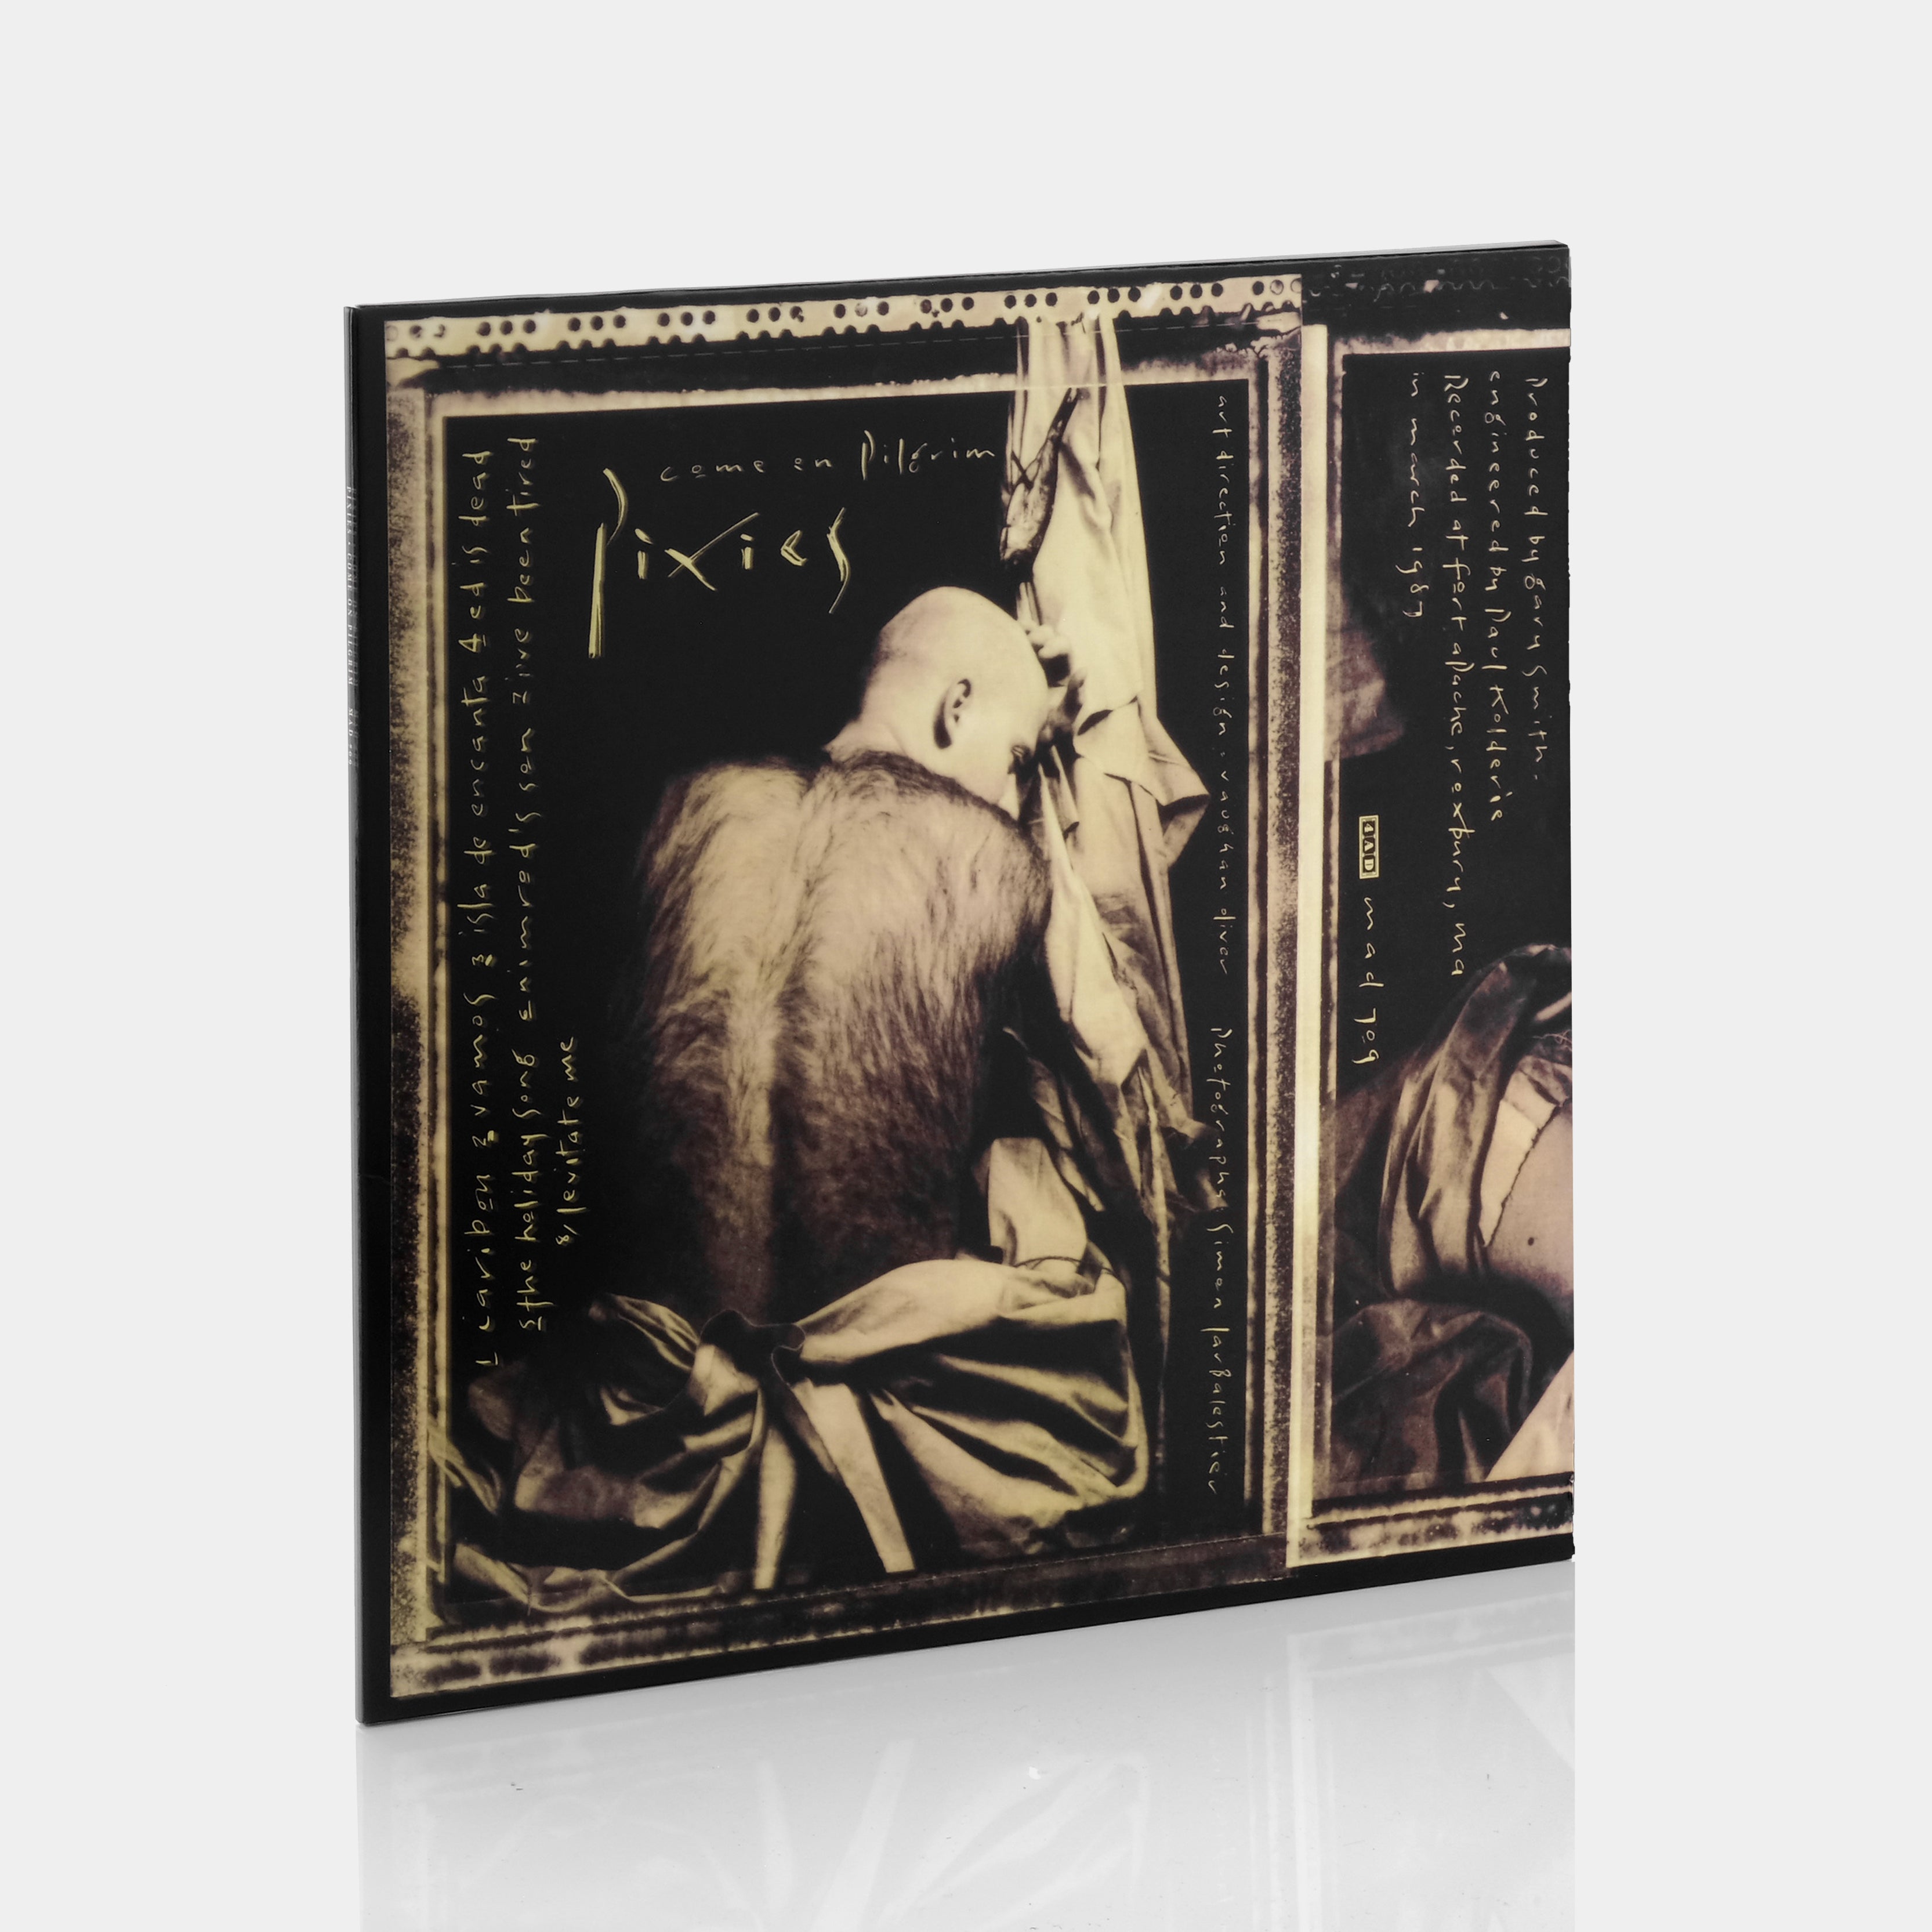 Pixies - Come On Pilgrim LP Vinyl Record